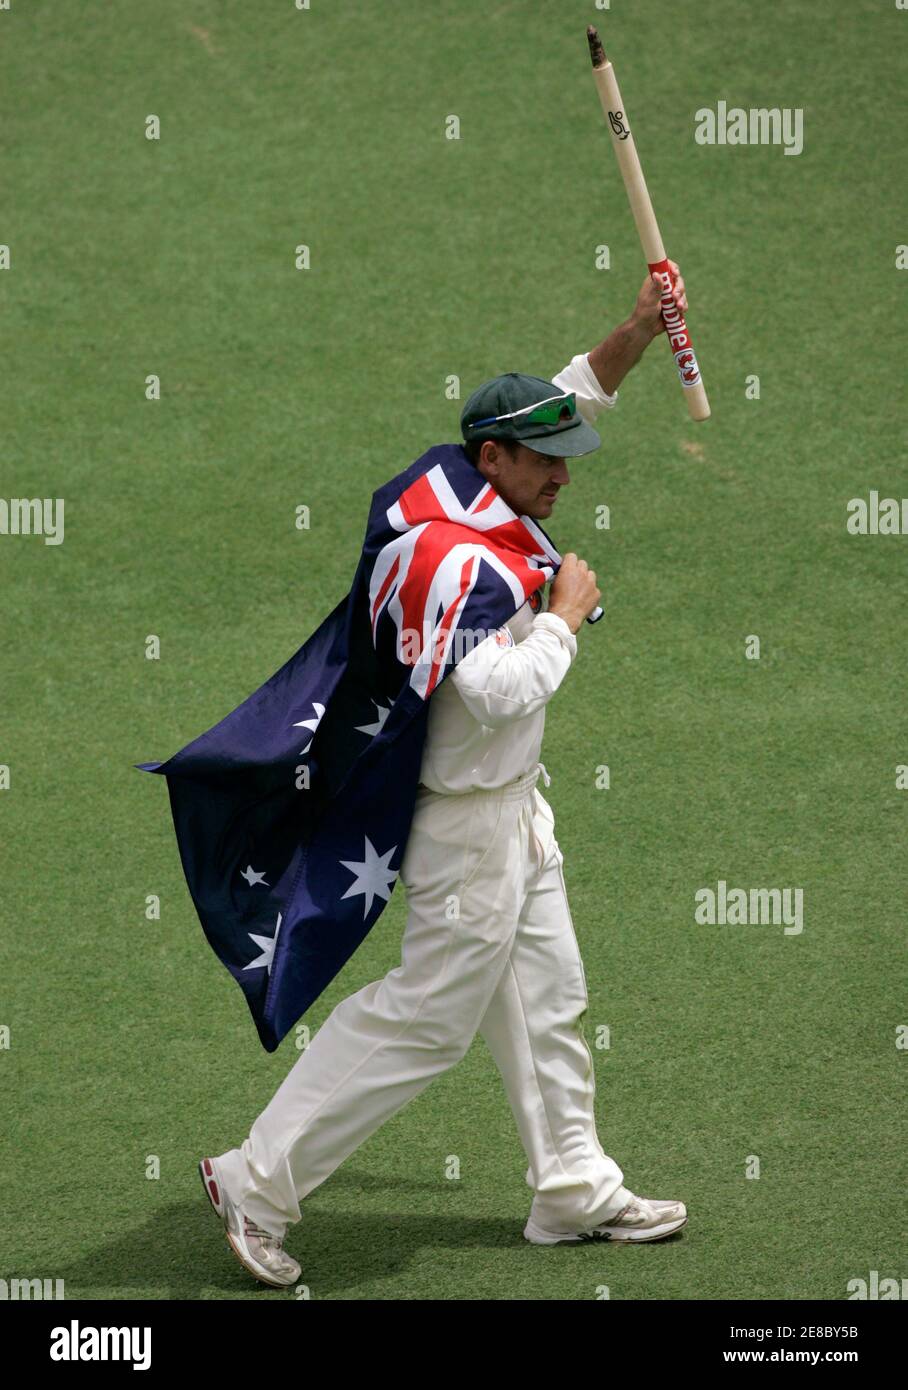 Justin Langer, de l'Australie, porte le drapeau australien et porte un cadeau souvenir après que l'Australie ait retrouvé les cendres en battant l'Angleterre le cinquième jour du troisième test de cricket à Perth le 18 décembre 2006. MOBILE OUT, USAGE ÉDITORIAL UNIQUEMENT REUTERS/WILL BURGESS (AUSTRALIE) Banque D'Images